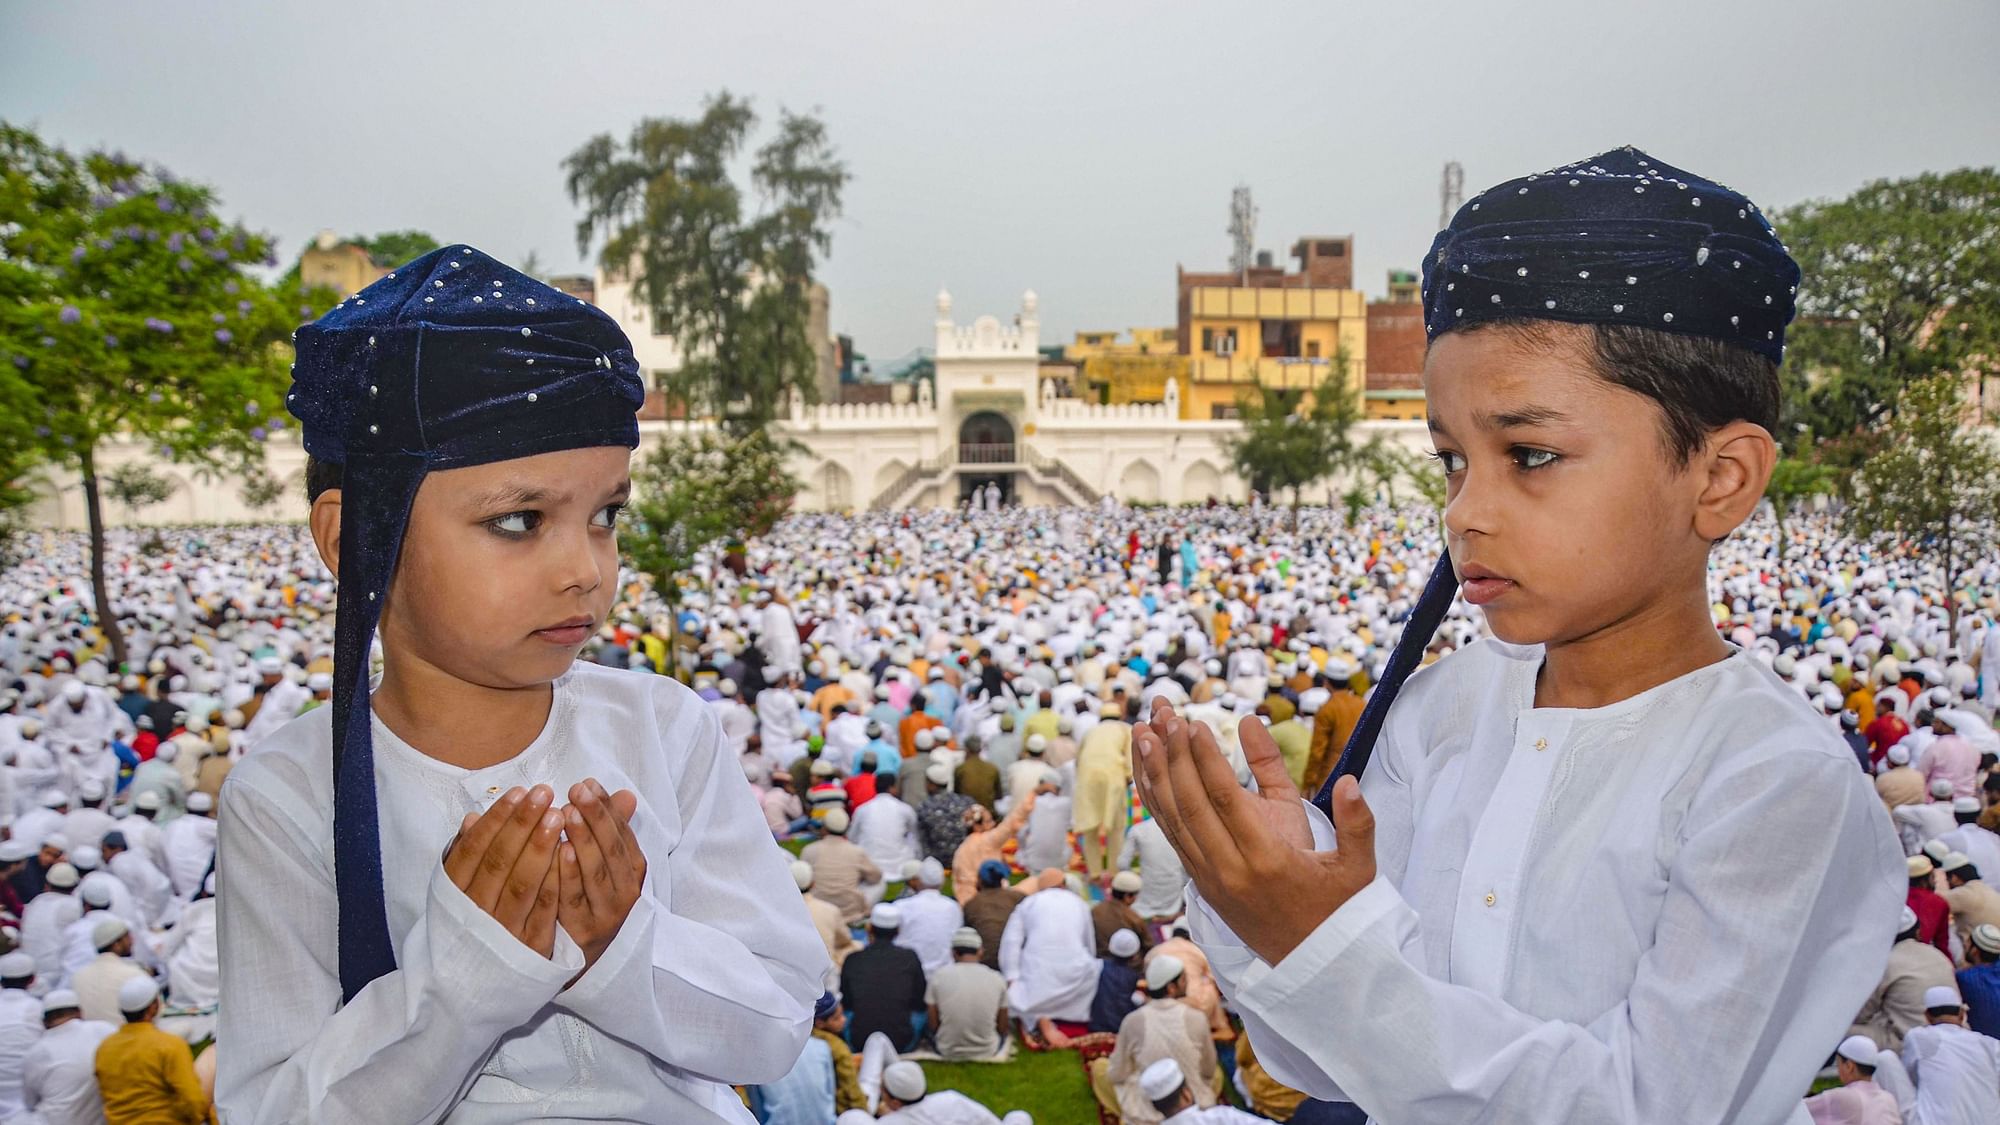 Happy (Bakrid) Eid ul-Adha Celebration Photos, Videos Live Updates in Hindi बकरीद का महीना इस्लामिक कैलेंडर का आखिरी महीना होता है